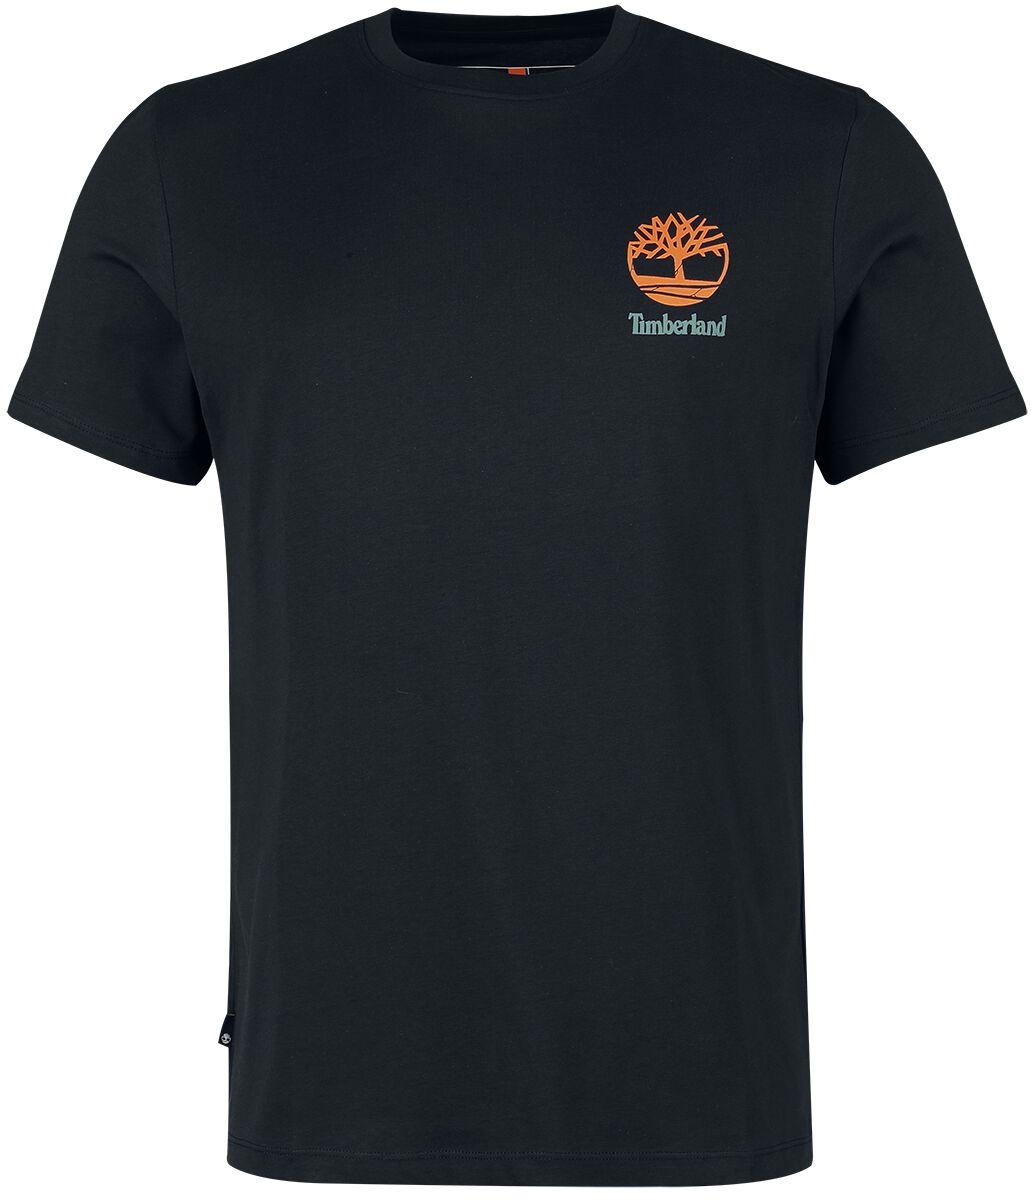 Timberland T-Shirt - Back Graphic Short Sleeve Tee - S bis XXL - für Männer - Größe L - schwarz